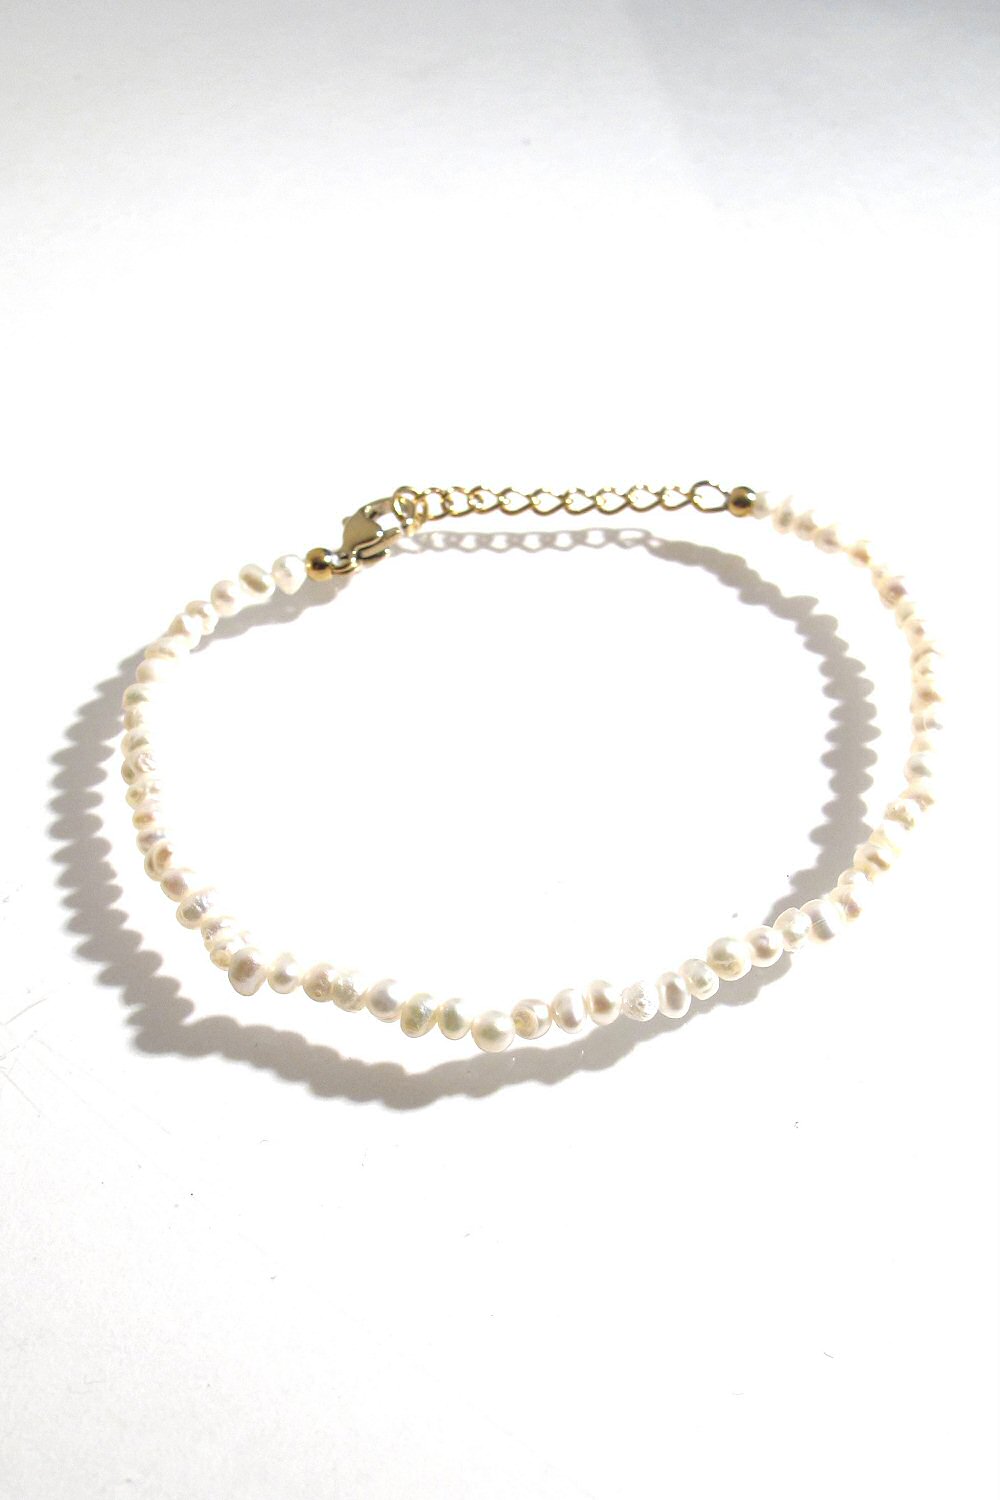 XX | Bali Temples bracelet Beads Mini nacre